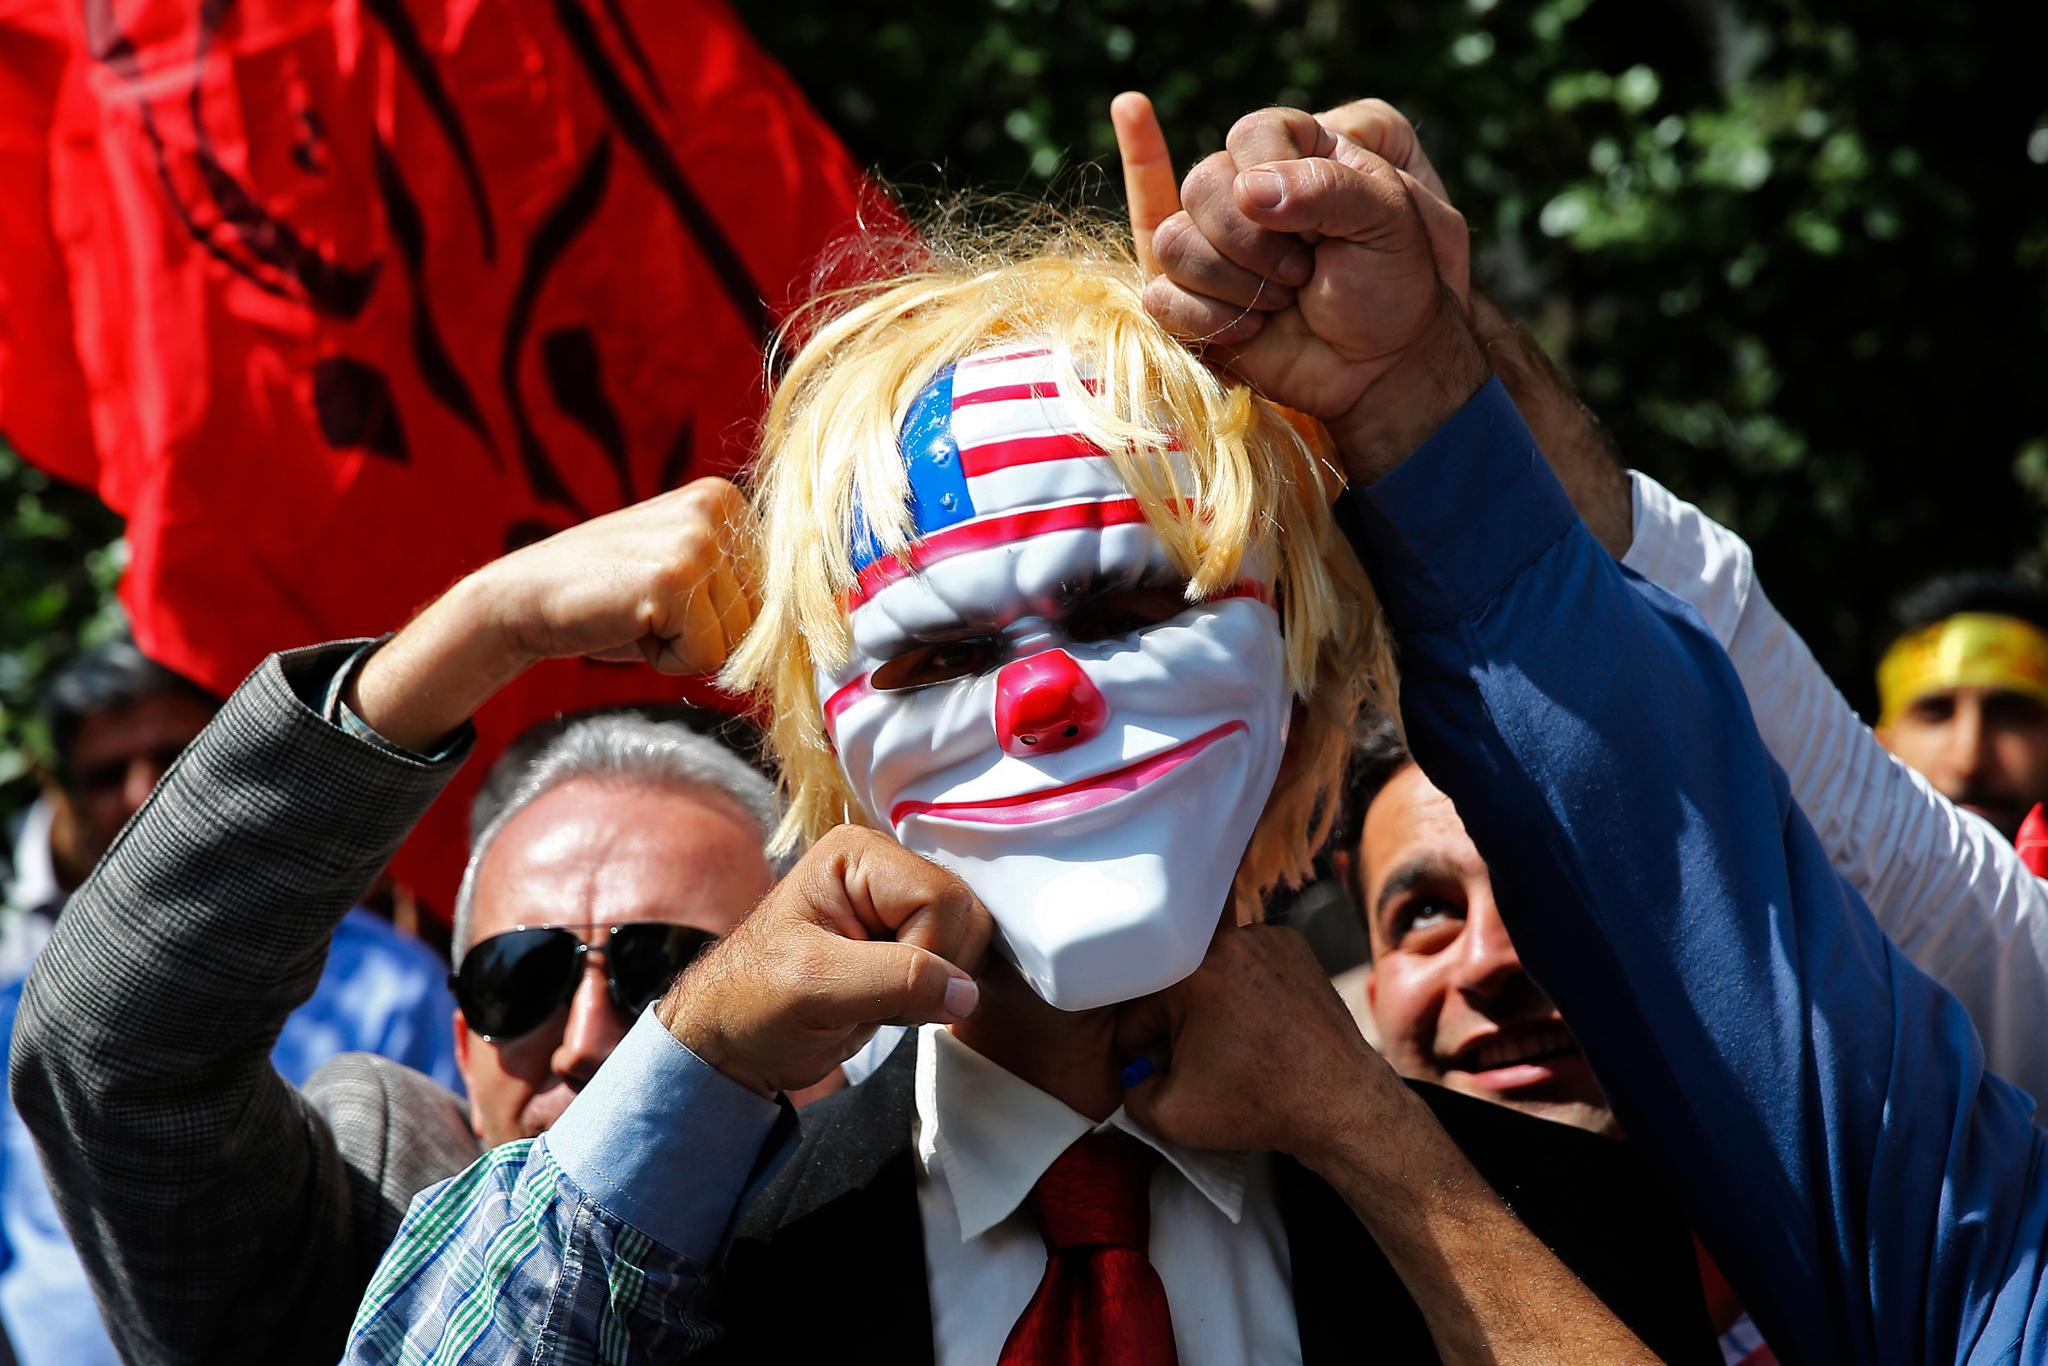 Motstanden mot USAs utenrikspolitikk har vært en viktig del av iranske myndigheters budskap de siste 40 årene. Her slår en iransk demonstrant til en maske som skal forestille Donald Trump under en protestaksjon utenfor den amerikanske ambassaden i Teheran i mai.